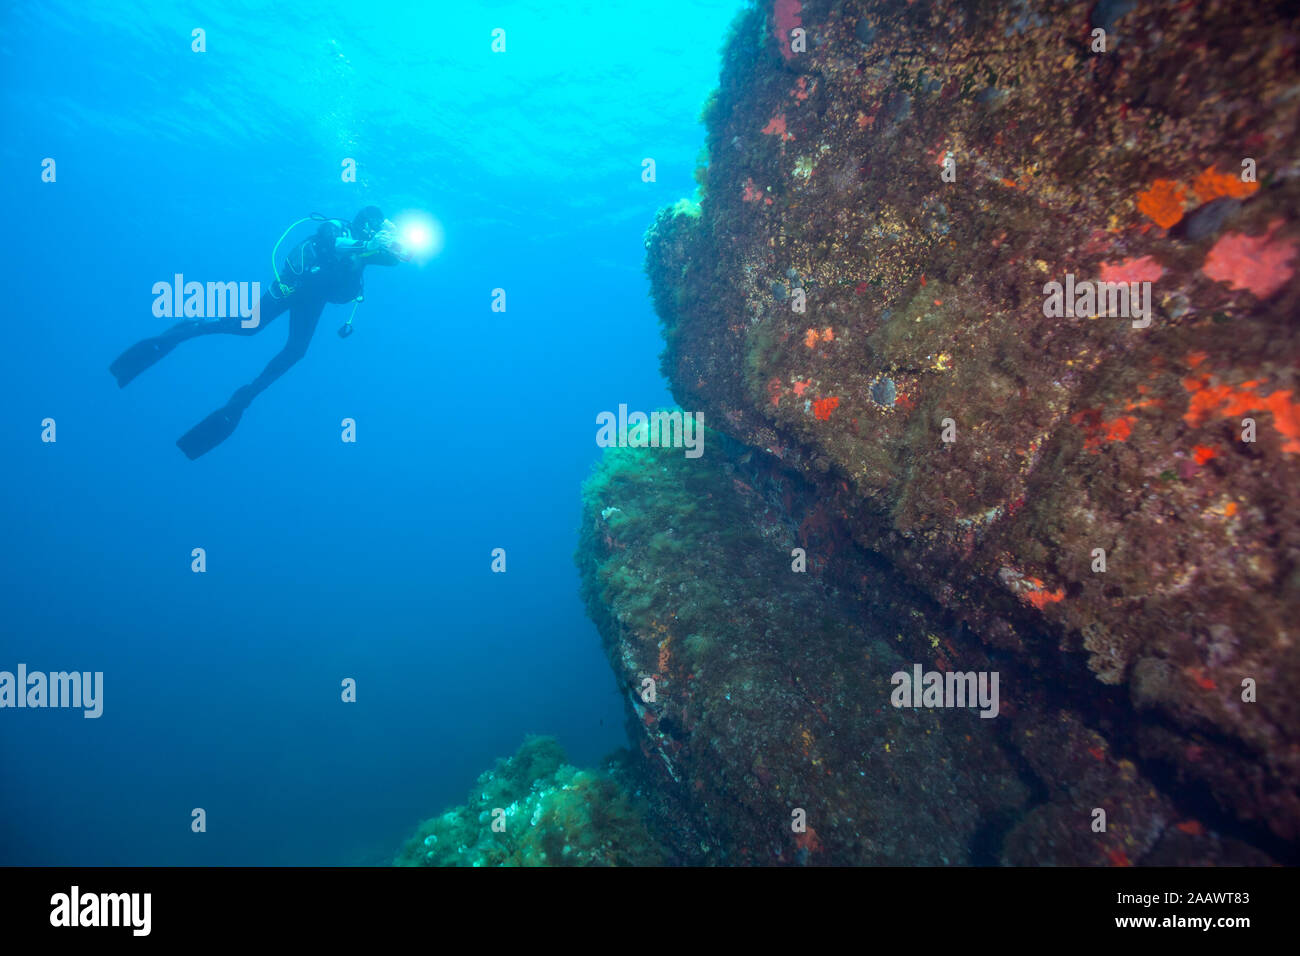 Frankreich, Korsika, Sagone, Unterwasser Blick auf Scuba Diver mit Taschenlampe Stockfoto